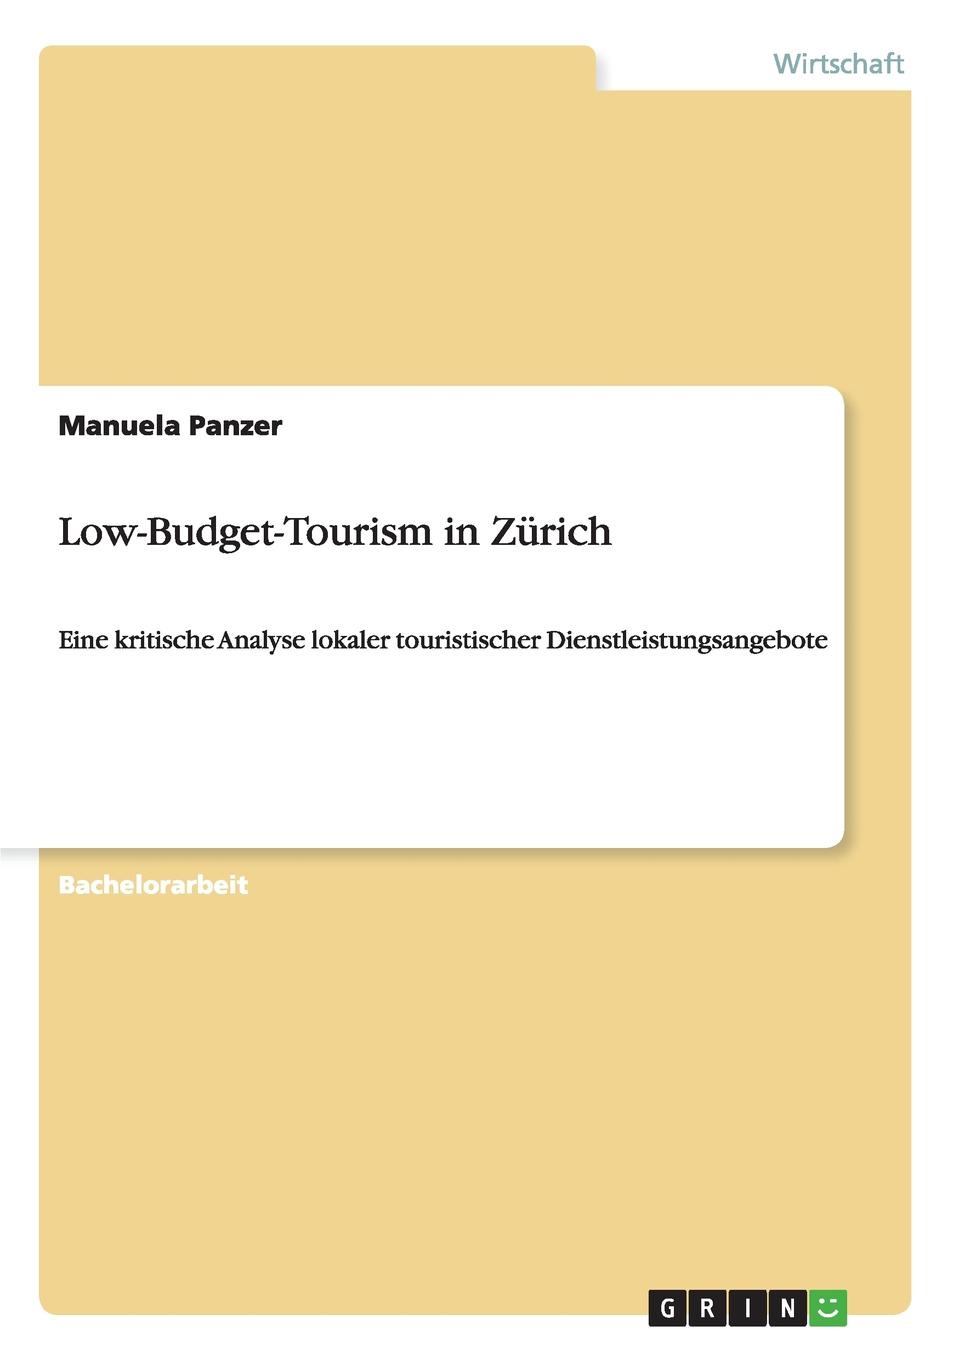 Low-Budget-Tourism in Zurich